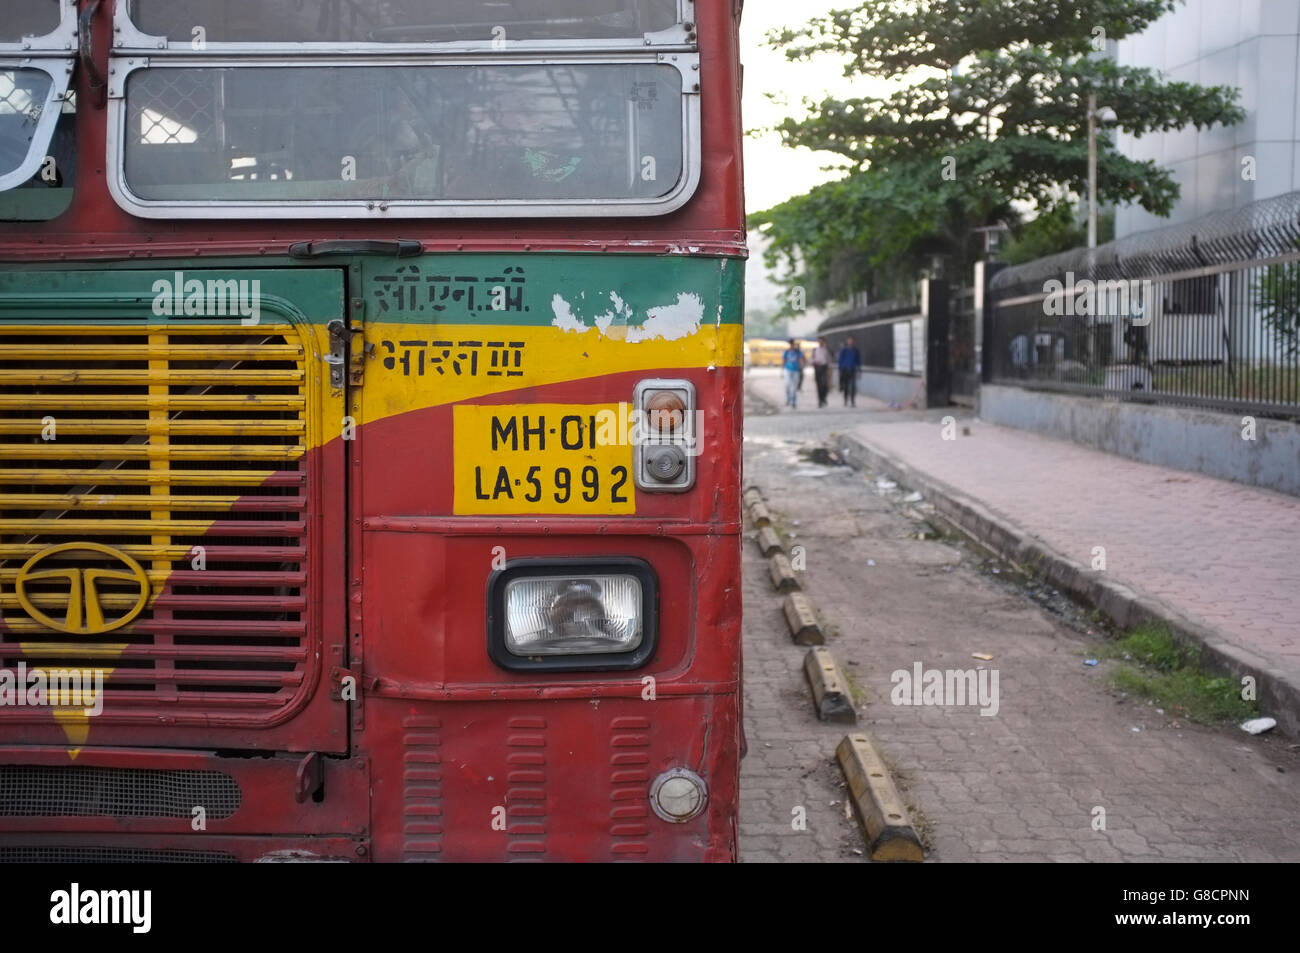 Indian bus coloré détail avec la plaque numéro, dans Bandra Kurla Complex (BKC) , MUMBAI, INDE Banque D'Images